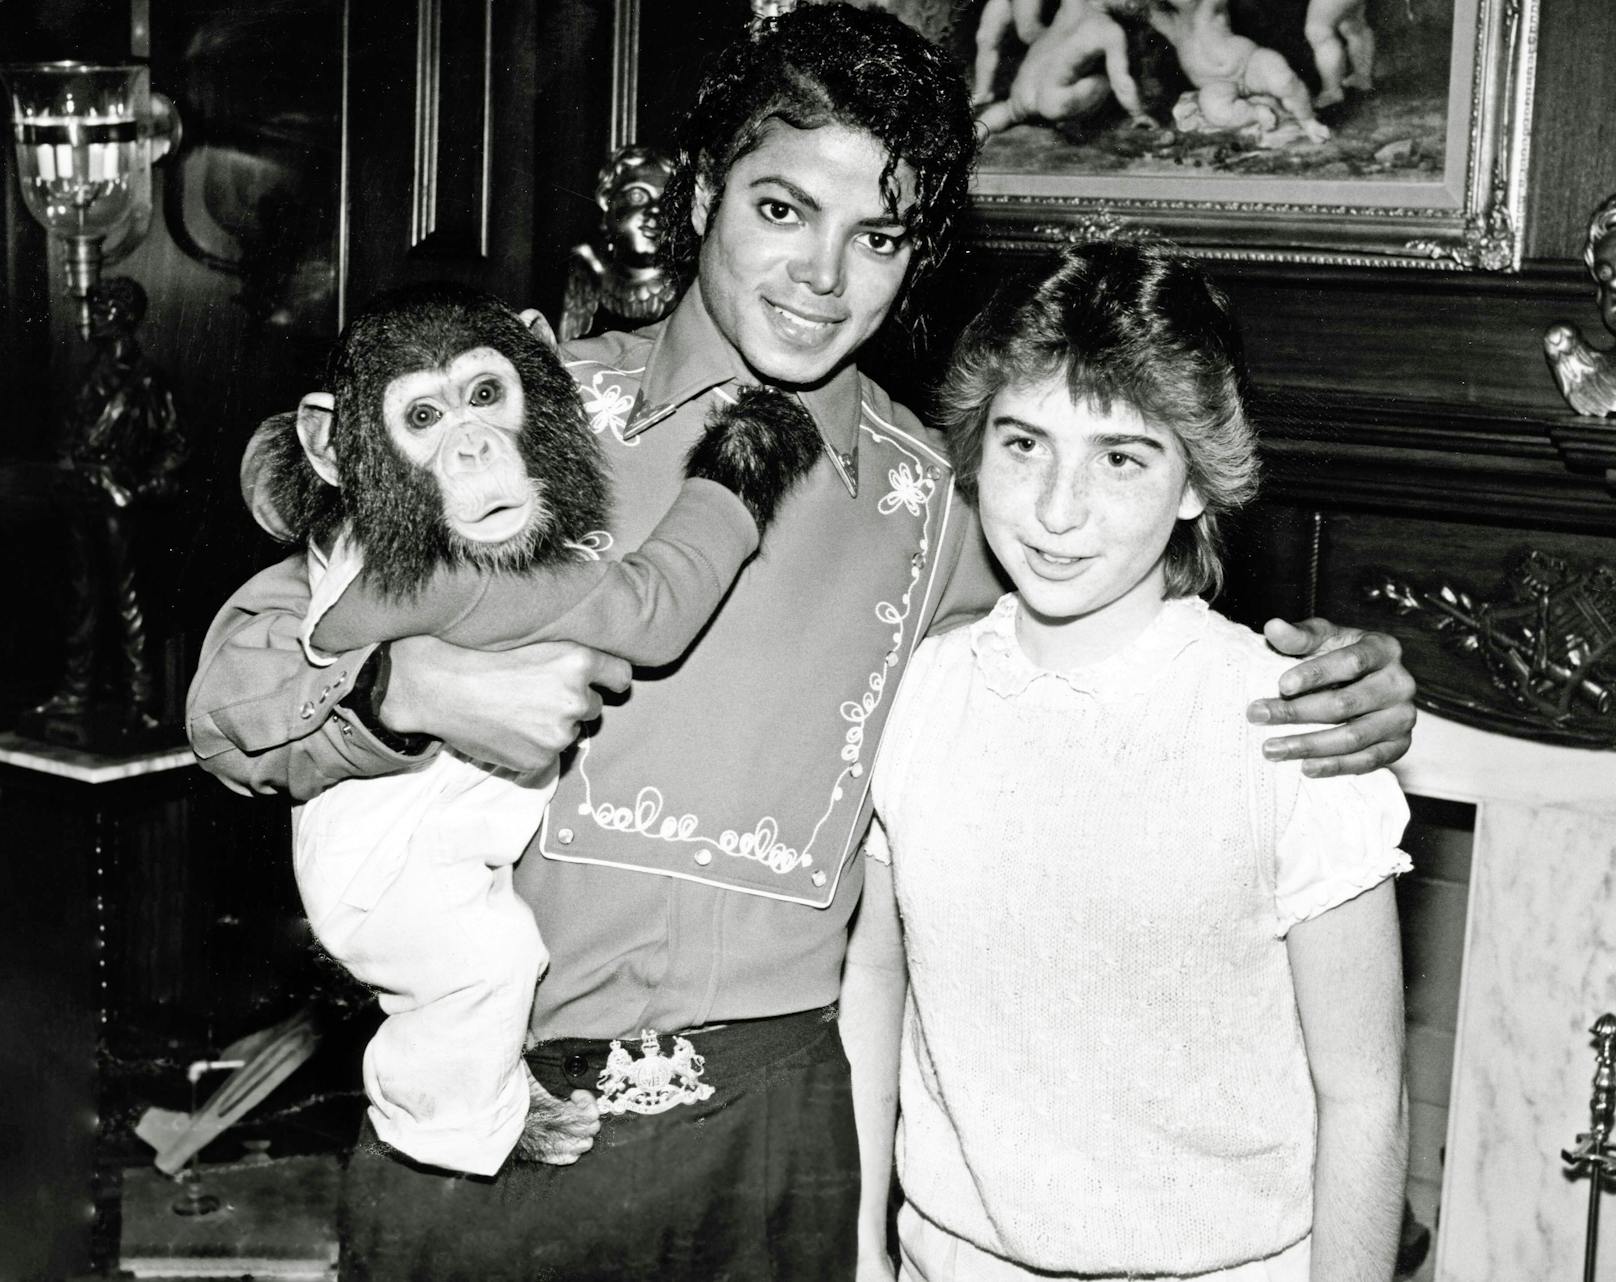 "Könnte Kinder angreifen": Jacksons Affe unter Verdacht